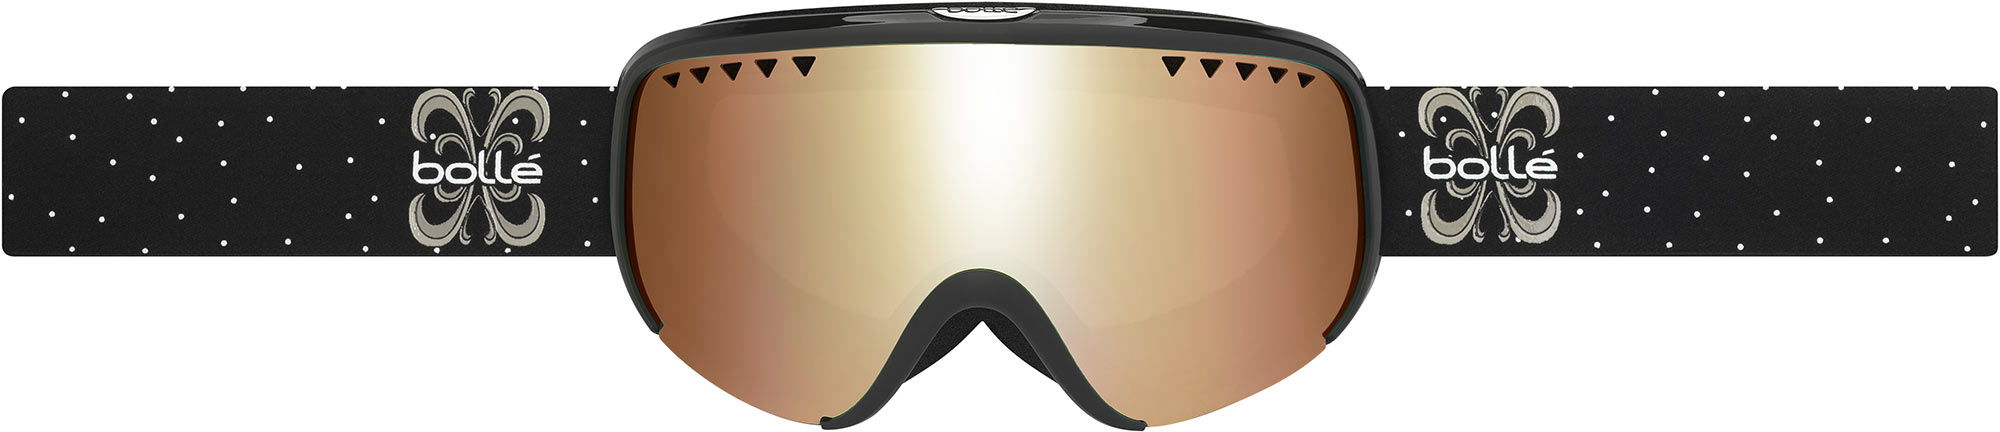 Modern women’s downhill ski goggles